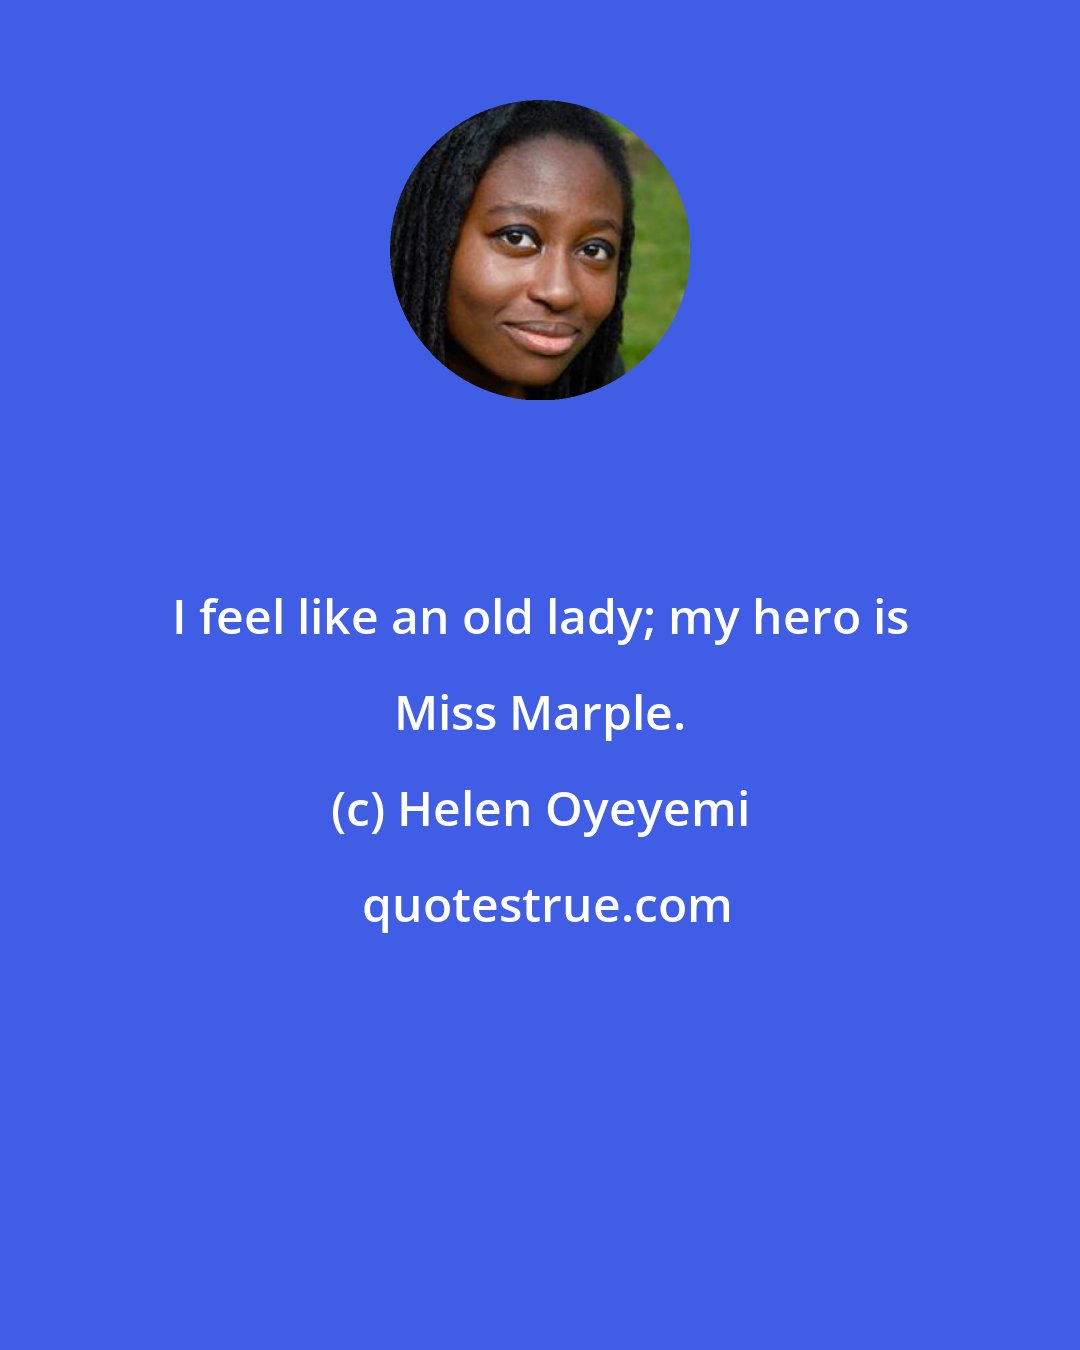 Helen Oyeyemi: I feel like an old lady; my hero is Miss Marple.